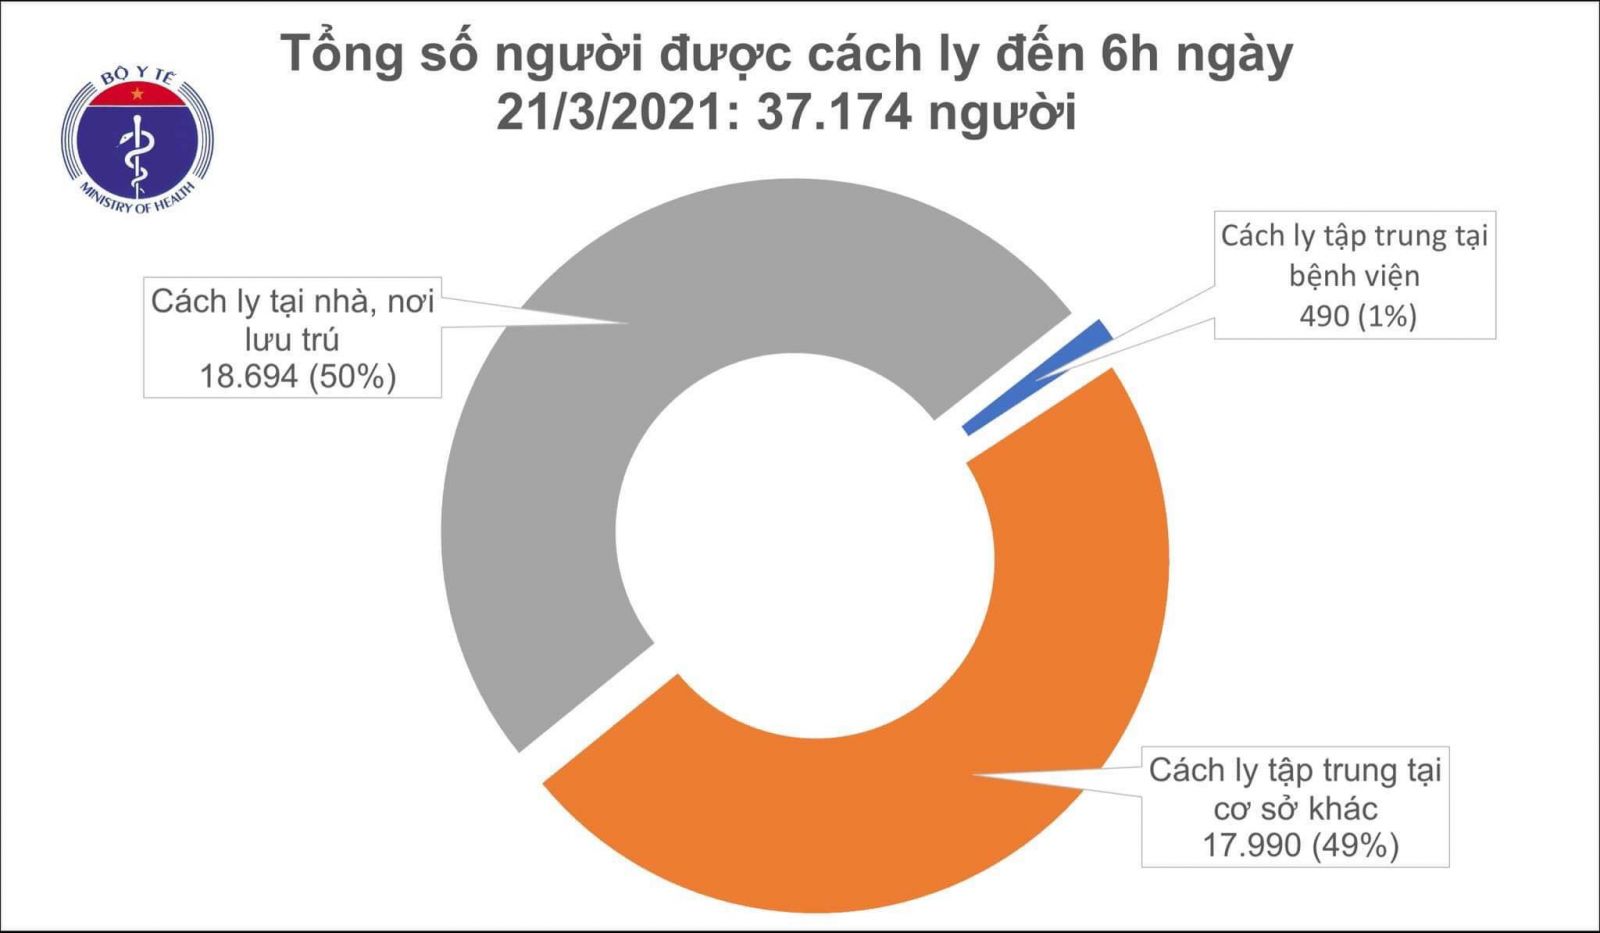 Sáng 21/3, hơn 32.000 người Việt đã tiêm vắc xin COVID-19, ghi nhận các phản ứng thông thường